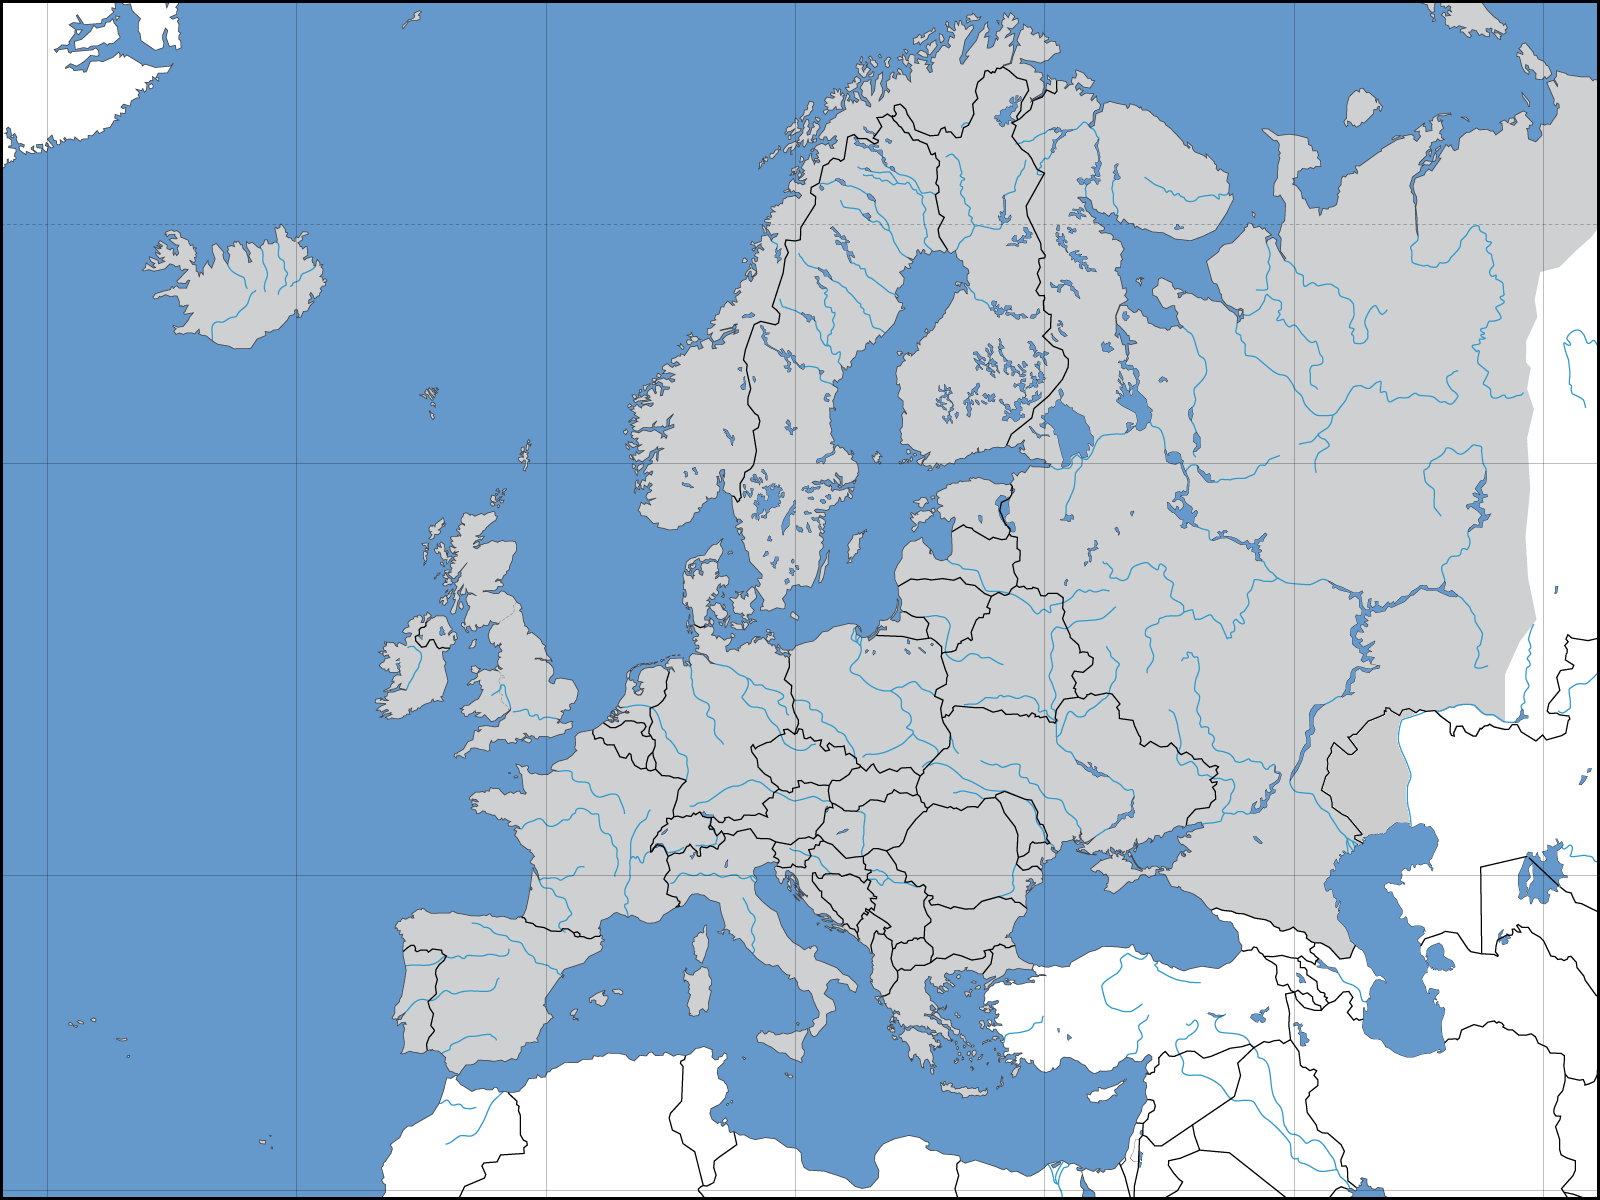 Mapa Político Mudo De Europa Tamaño Completo